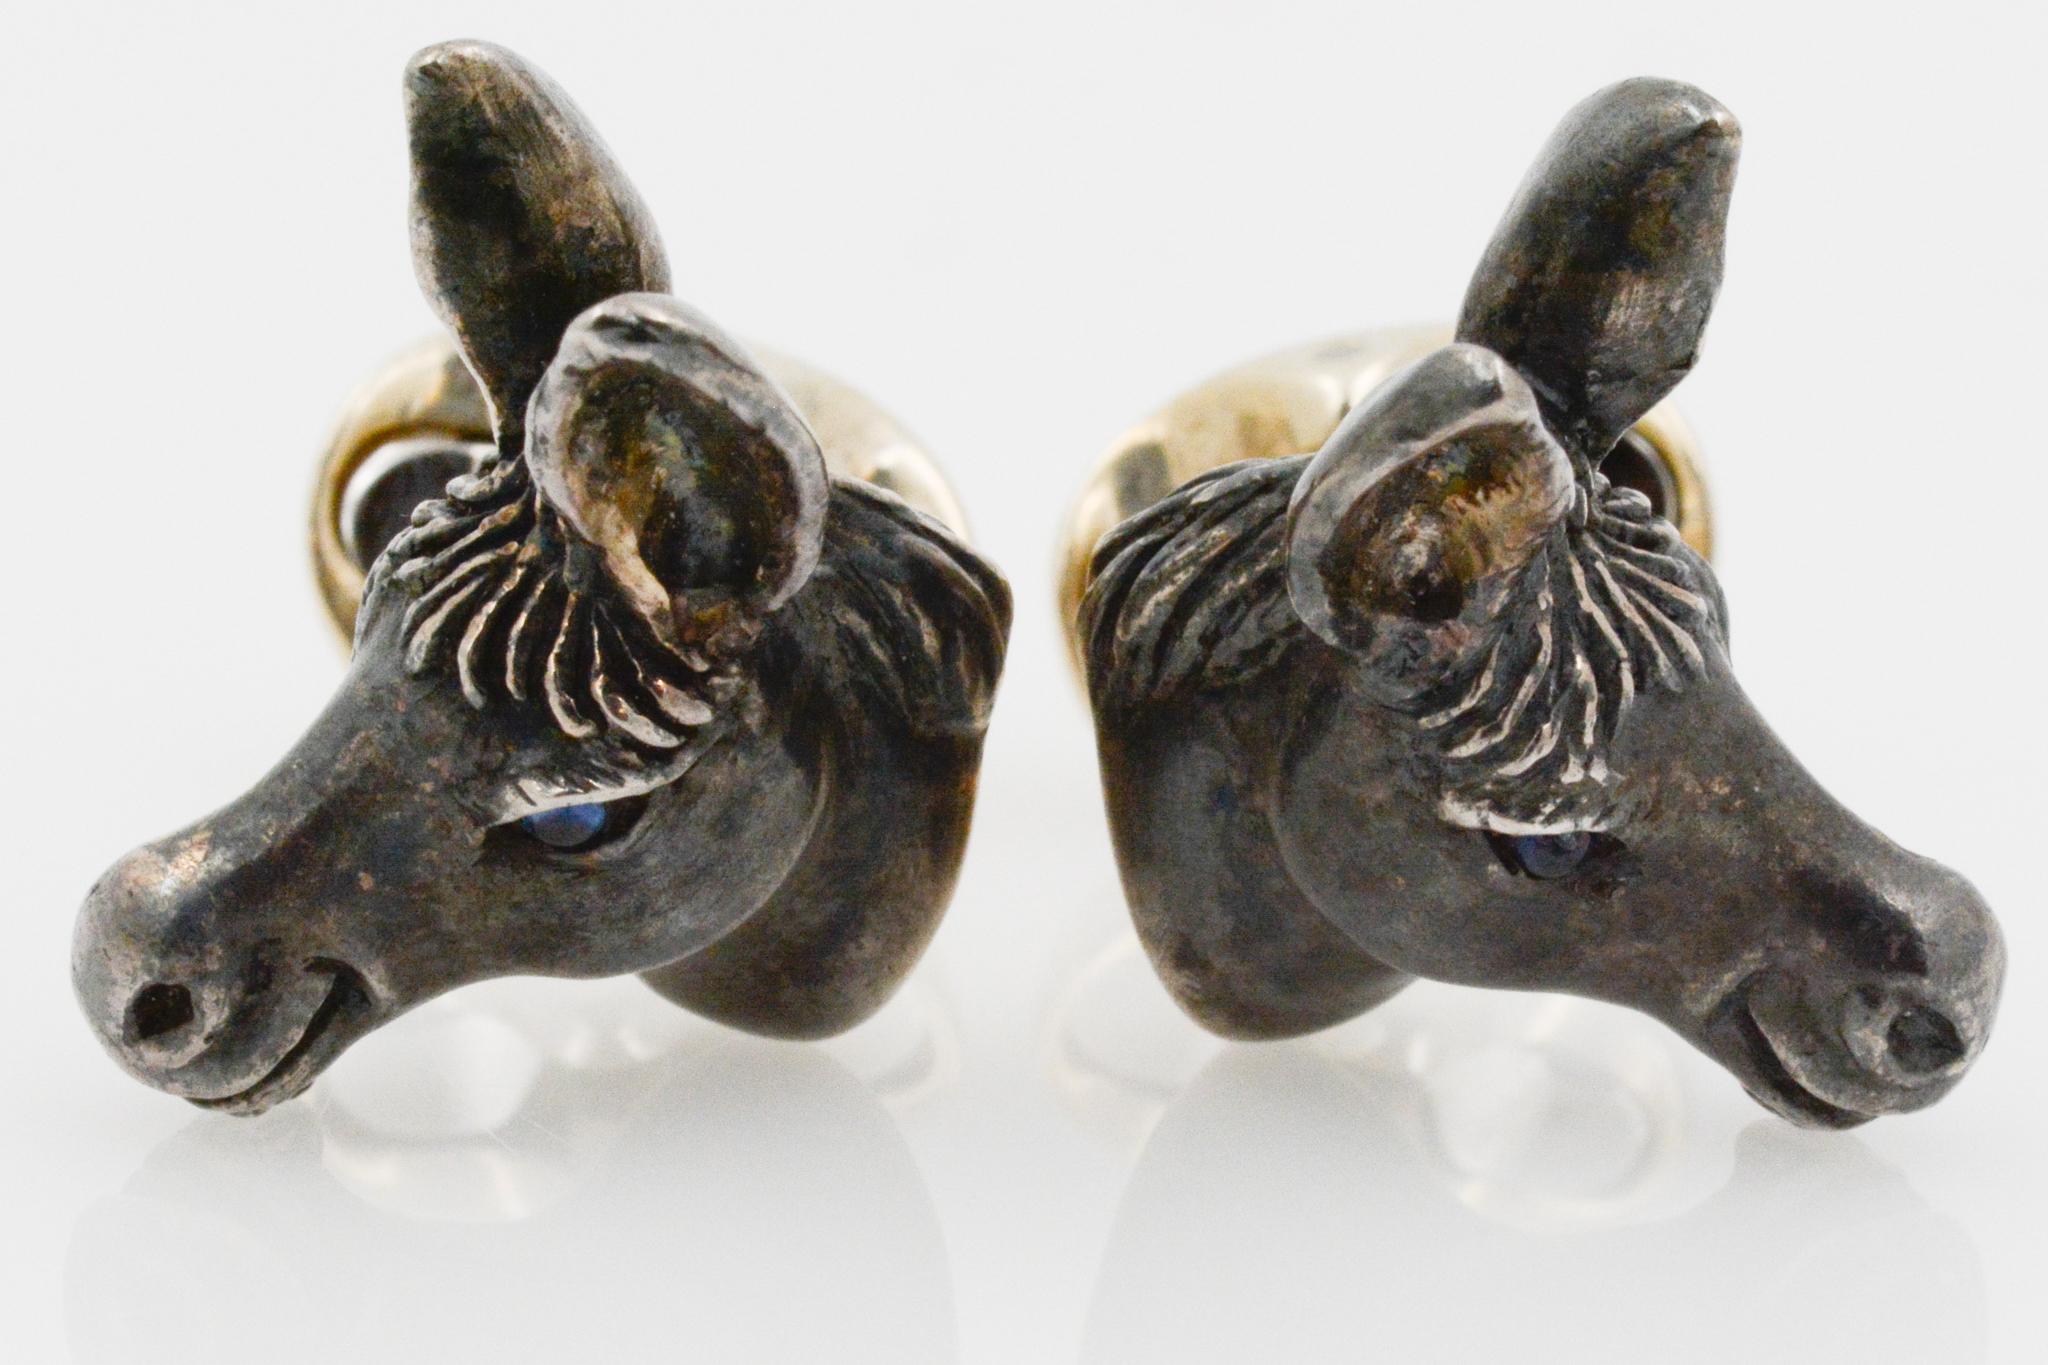 Ces boutons de manchette en sterling ont un design de tête d'âne réaliste, avec des détails complexes des oreilles, de la crinière et des yeux bleu saphir. Ces boutons de manchette ont un dos ovale. 

